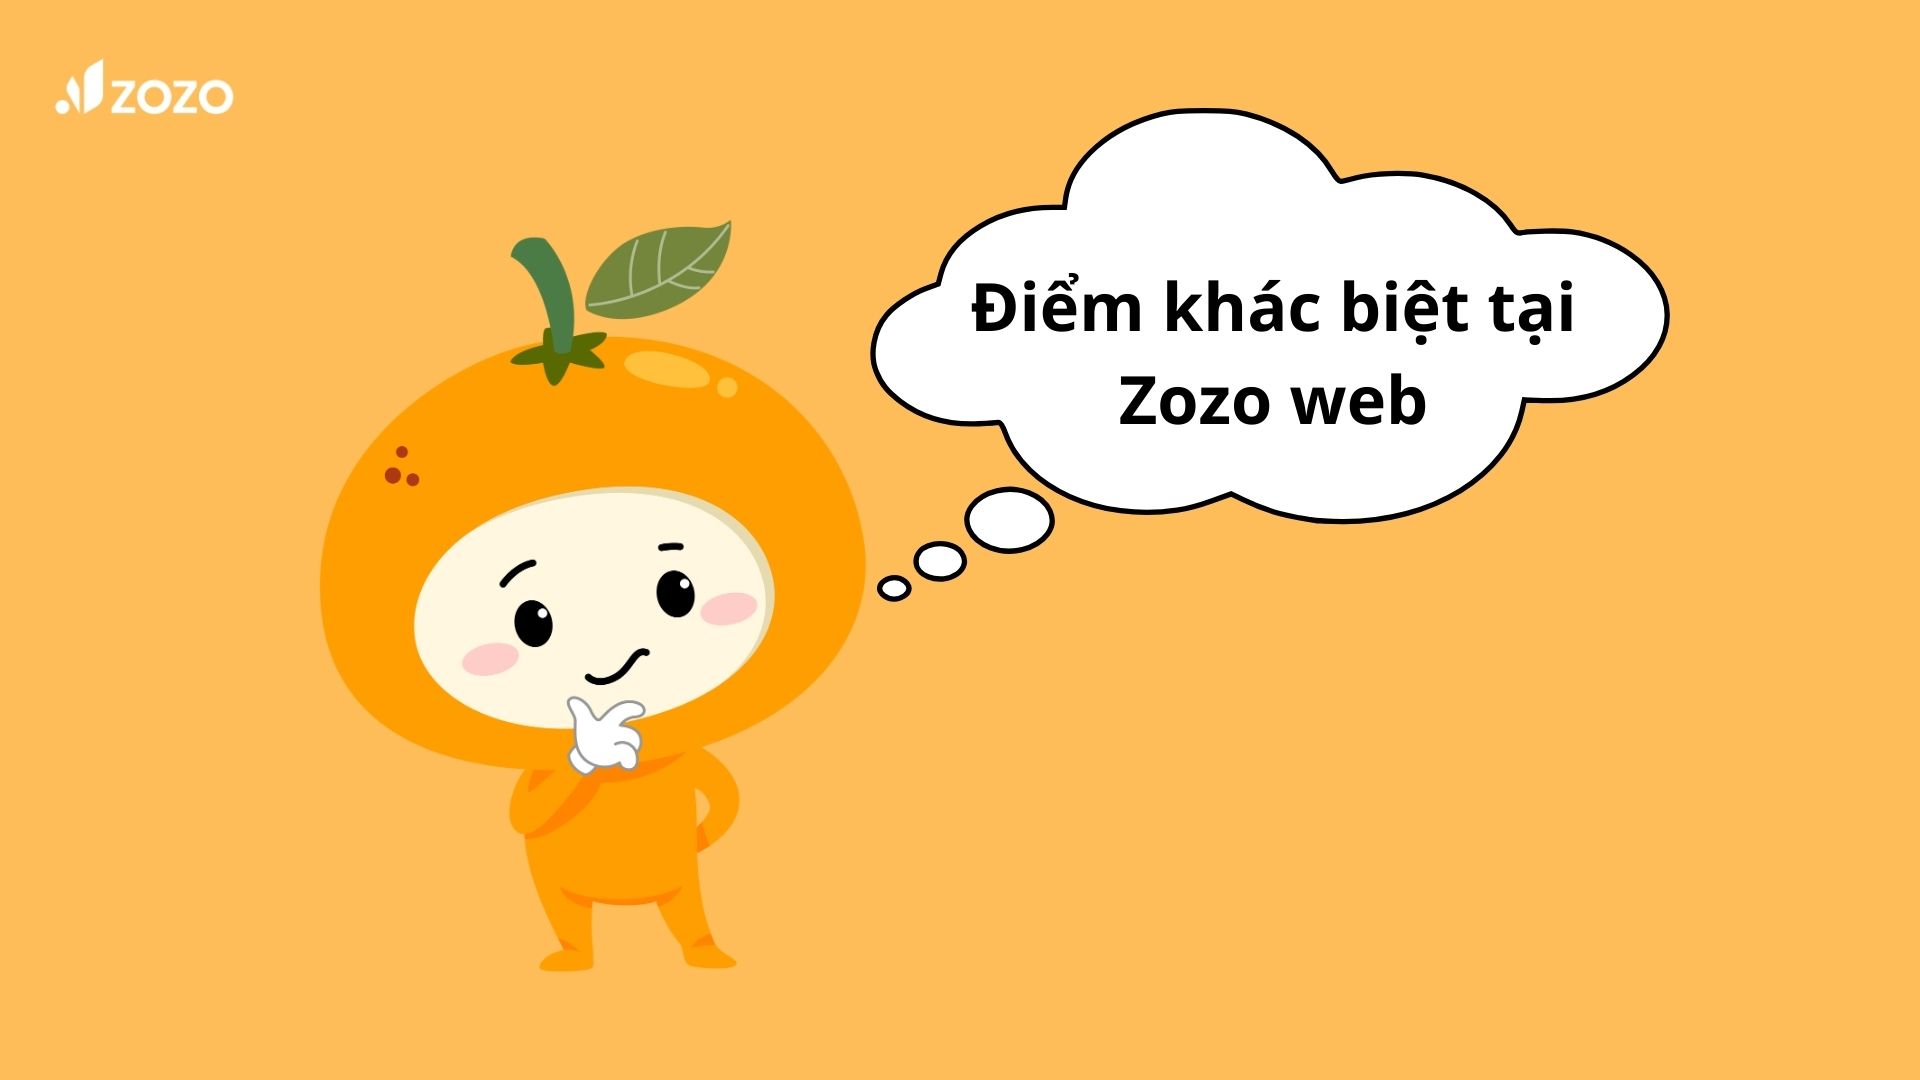 Zozo web mang lại website cho bạn có những khác biệt nào